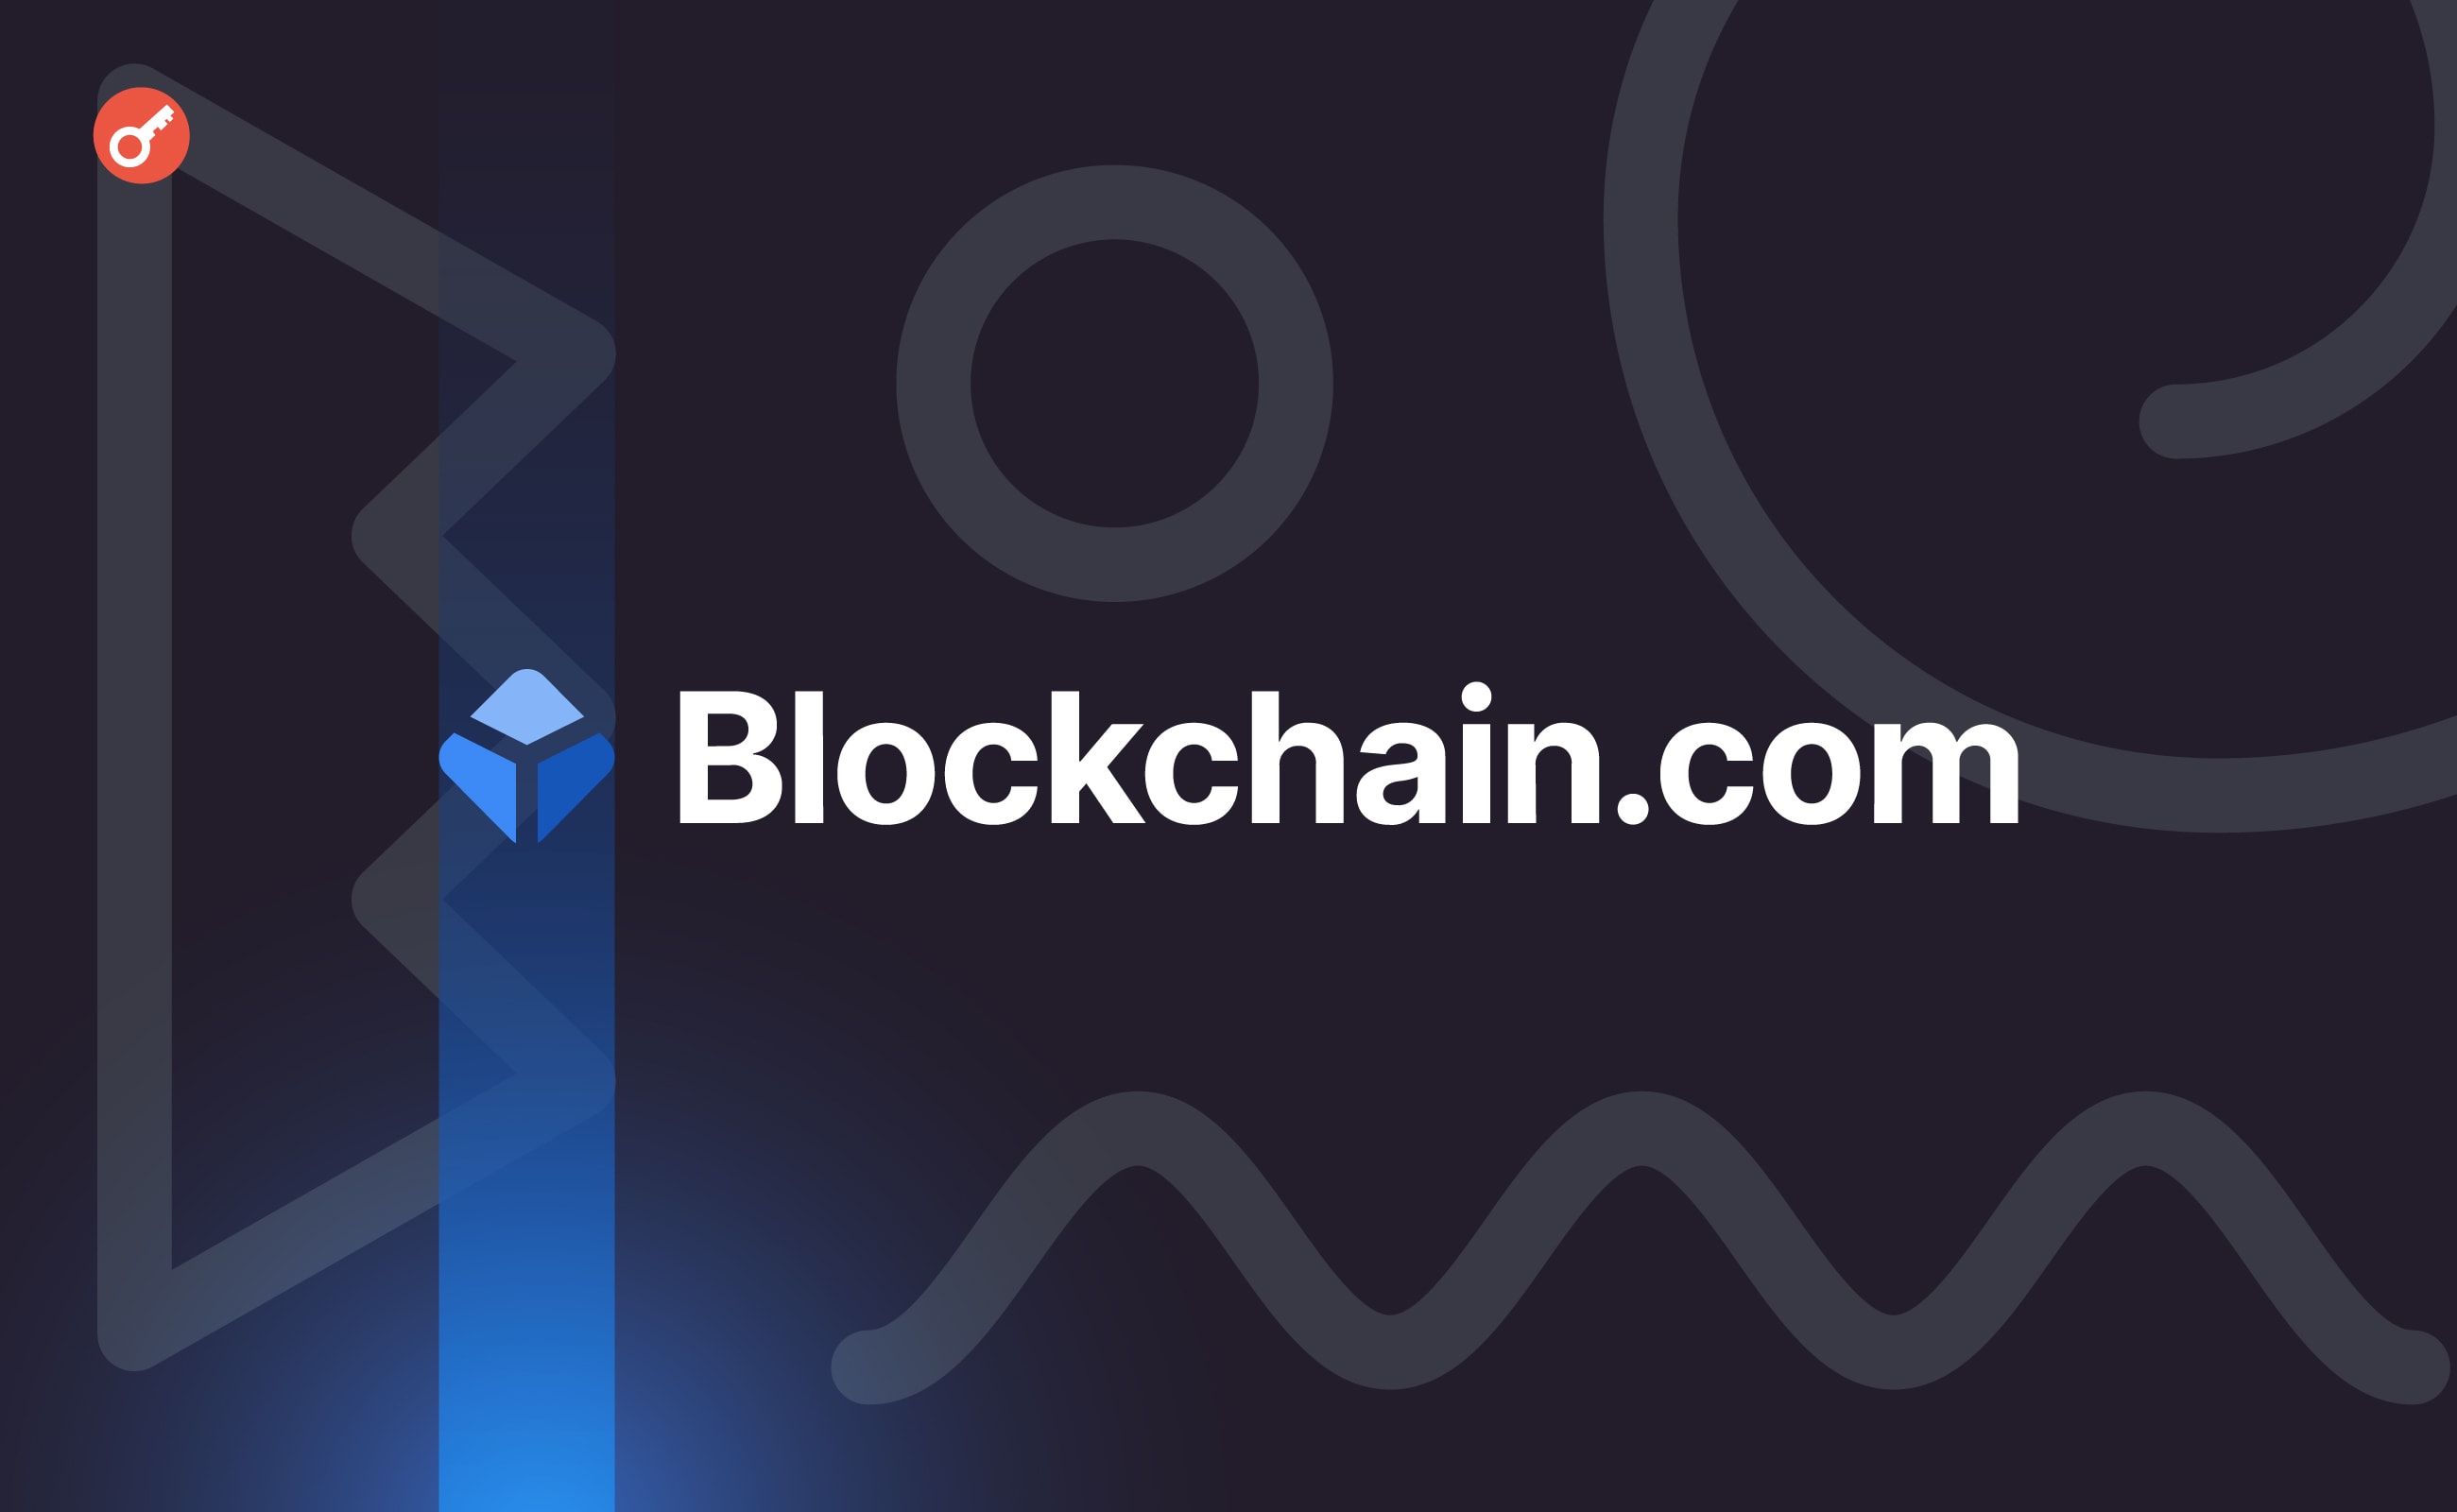 Blockchain.com привлекла $110 млн в ходе раунда финансирования. Заглавный коллаж новости.